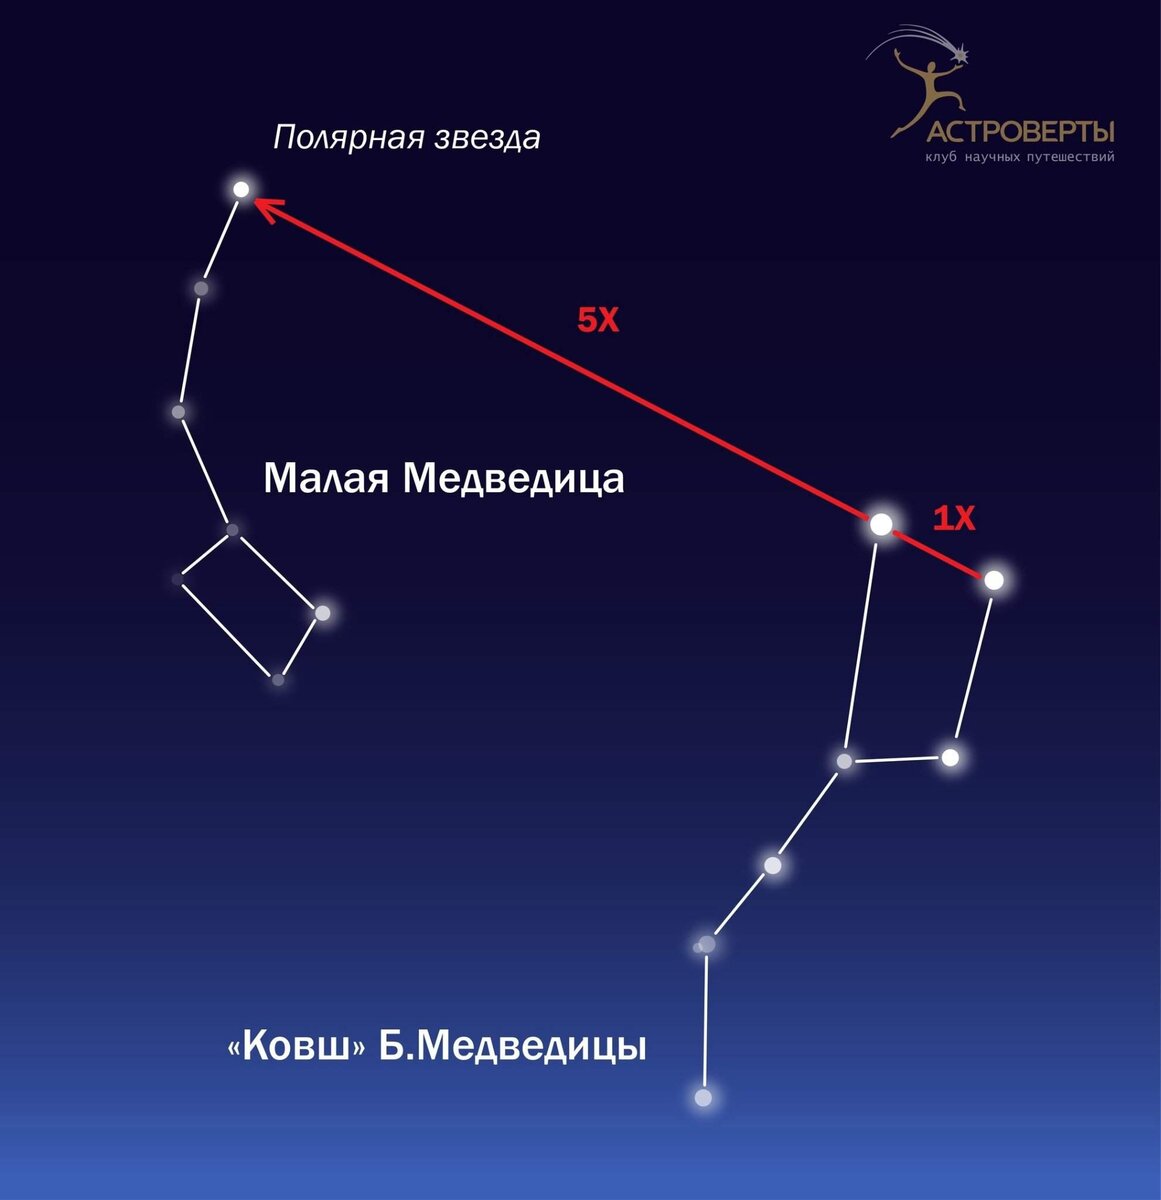 Созвездие Большая Медведица (UMa, Ursa Major)